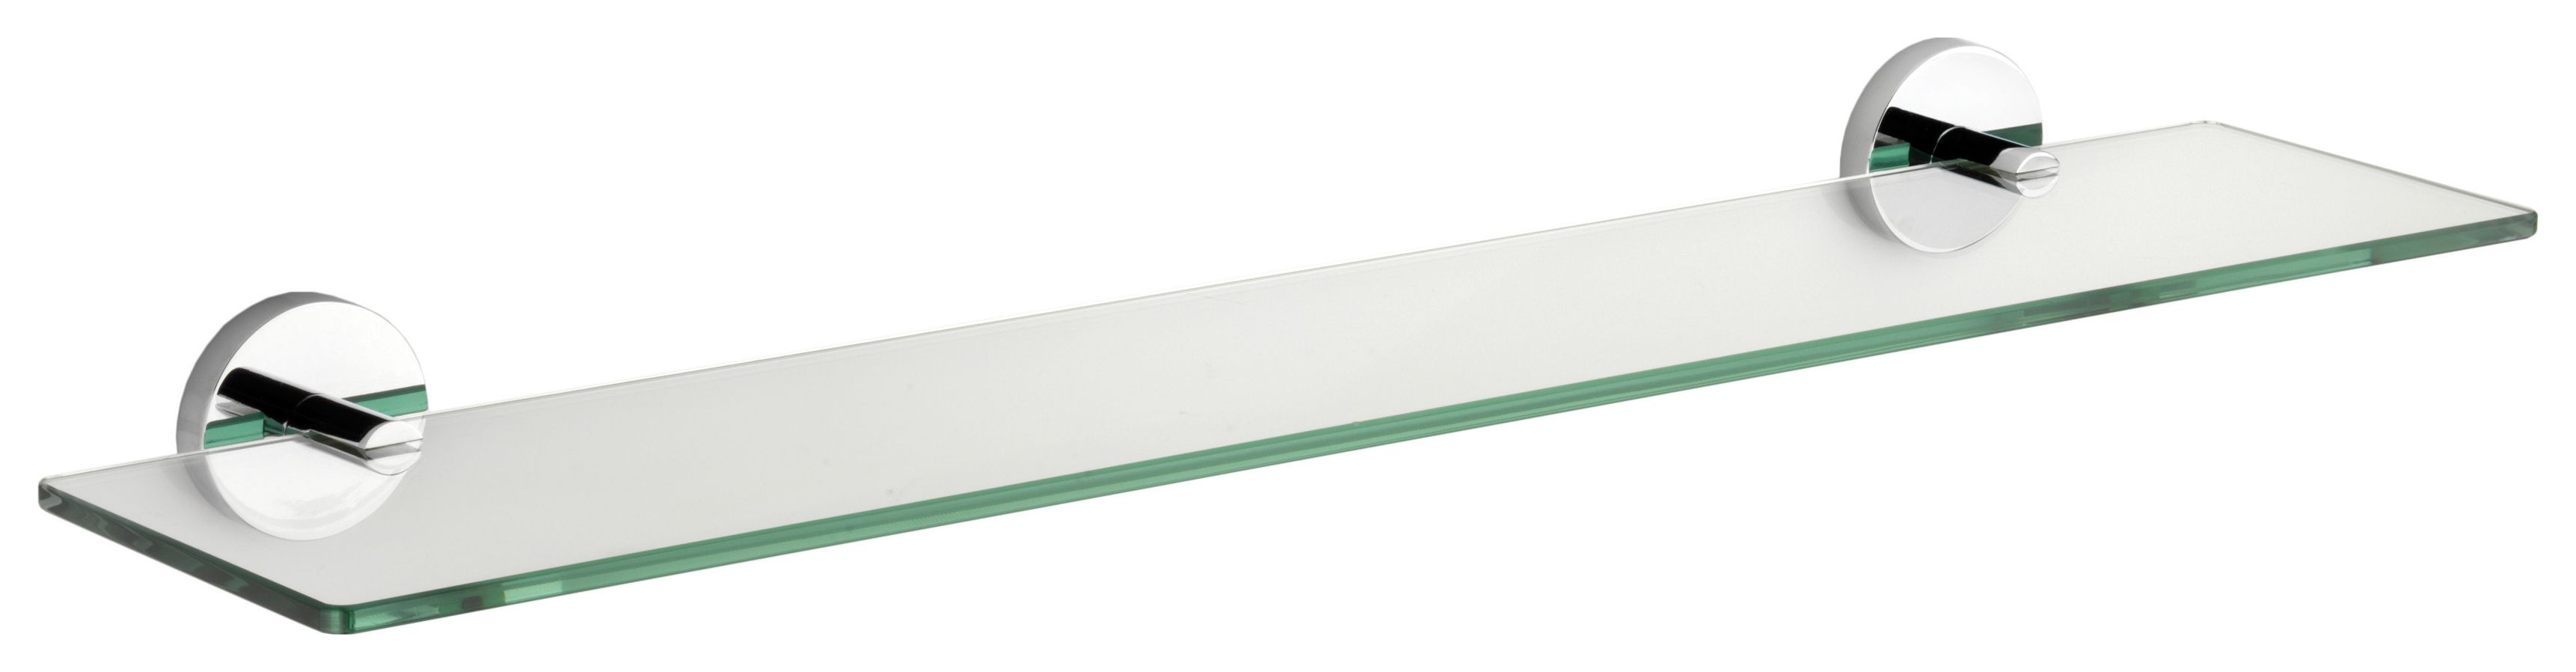 Croydex Flexi-Fix Pendle Bathroom Glass Shelf - Chrome